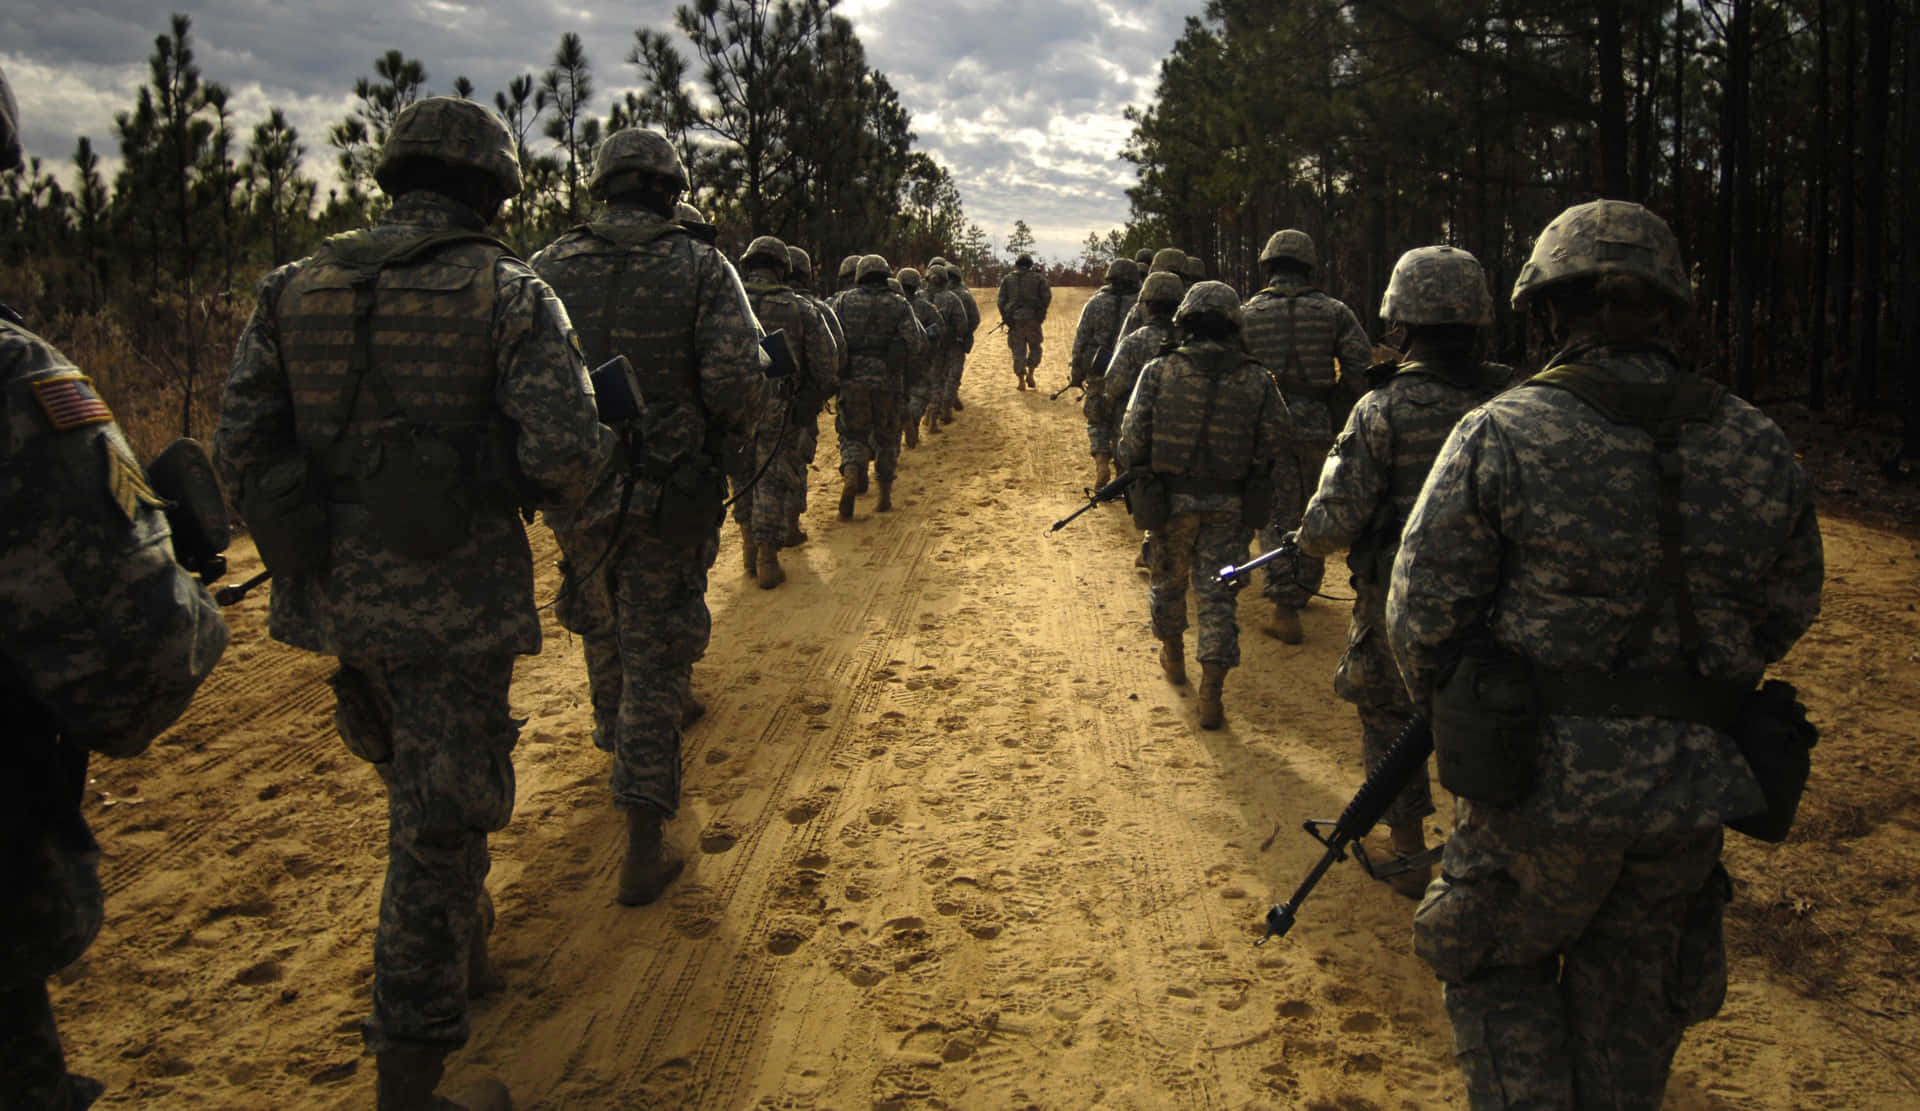 Ungrupo De Soldados Caminando Por Un Camino De Tierra Fondo de pantalla